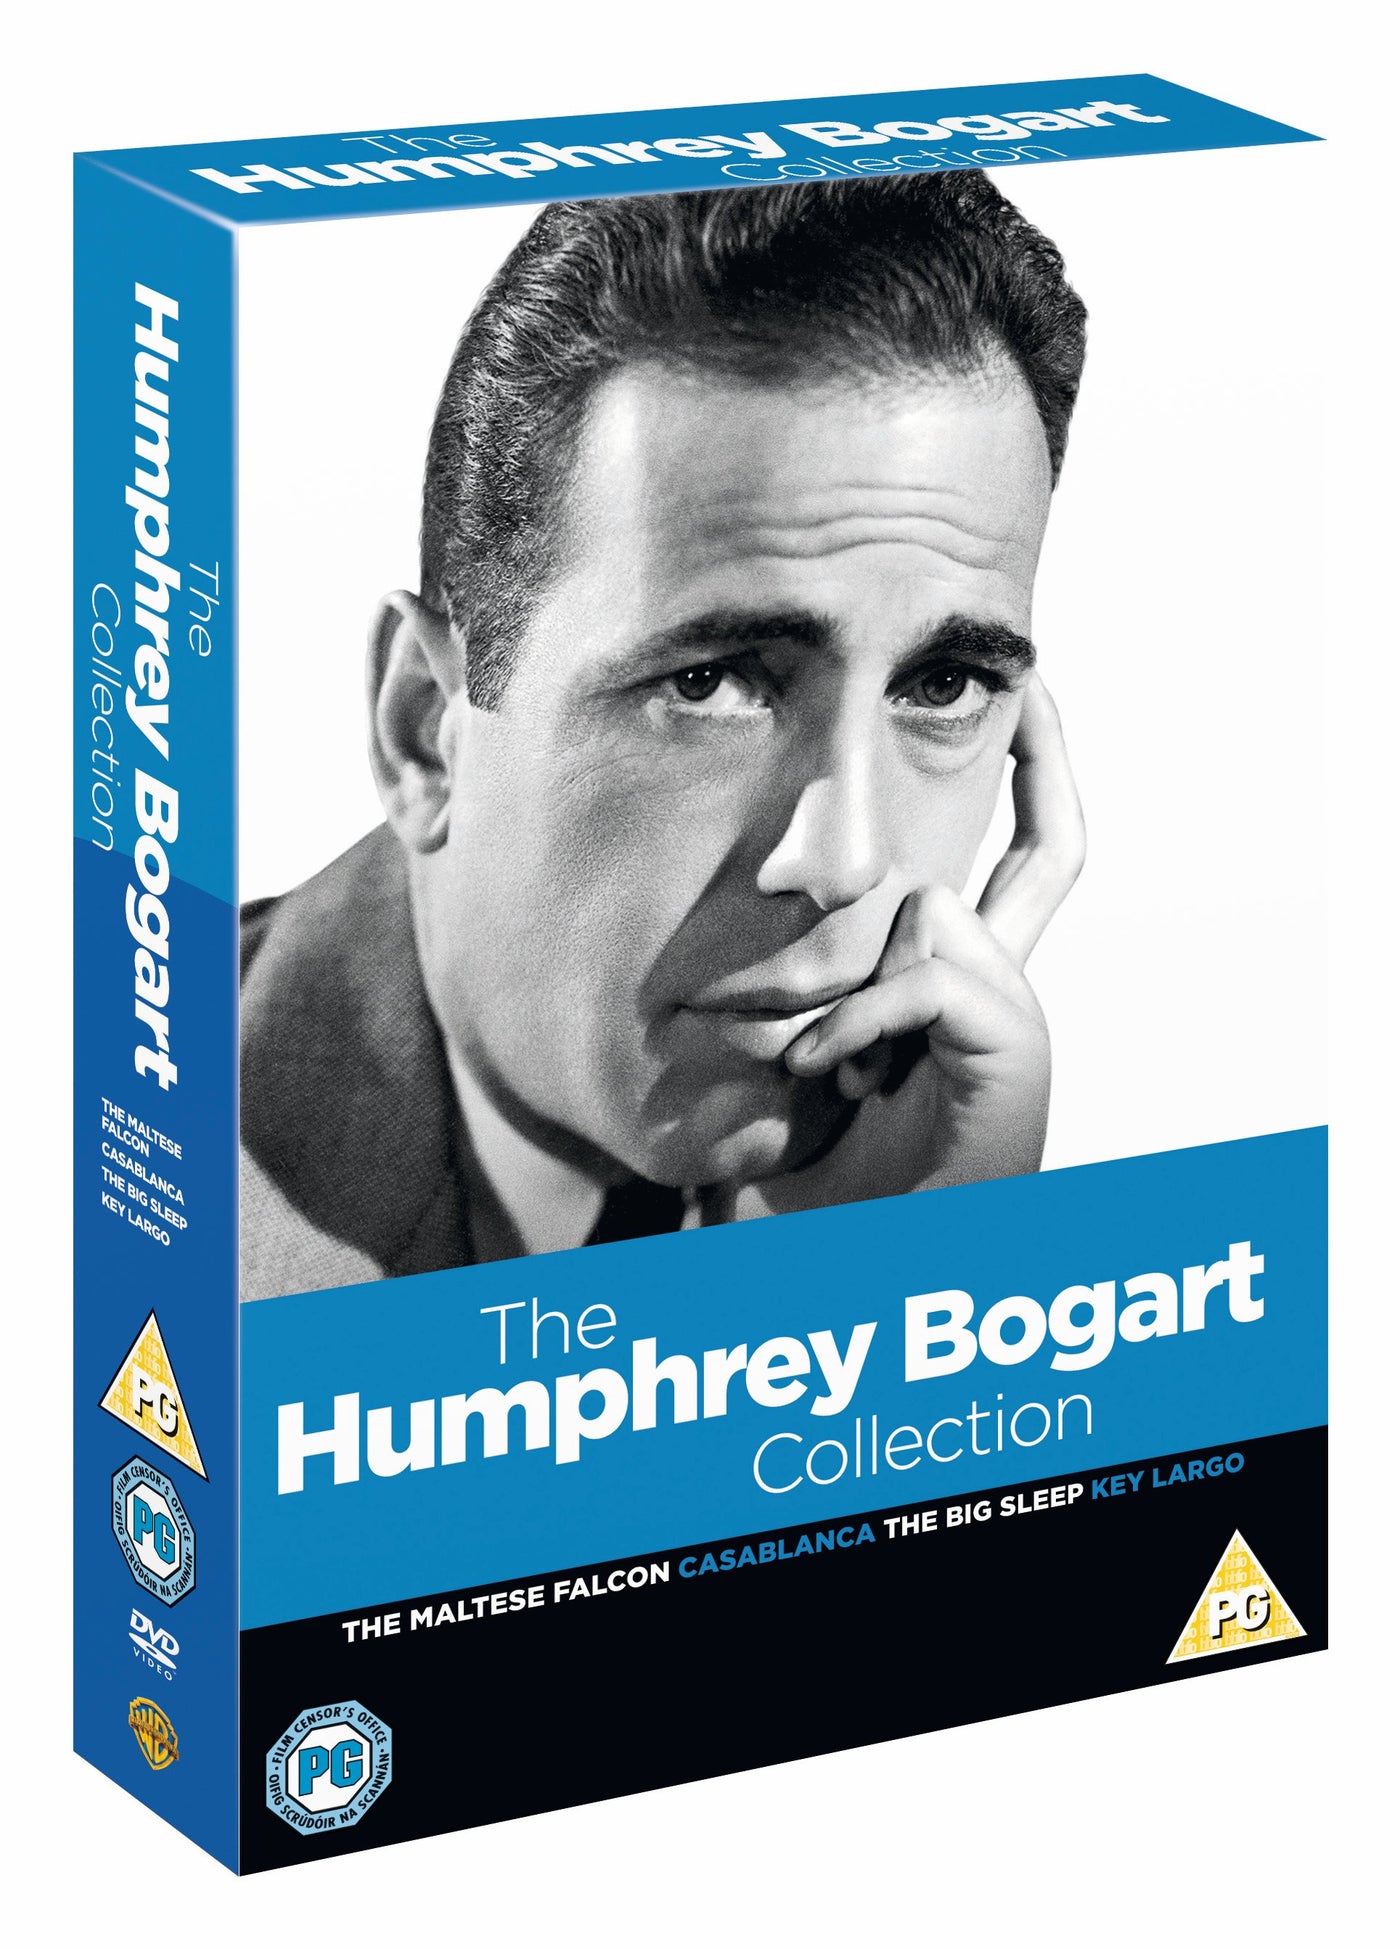 Humphrey Bogart: Golden Age Collection (DVD)